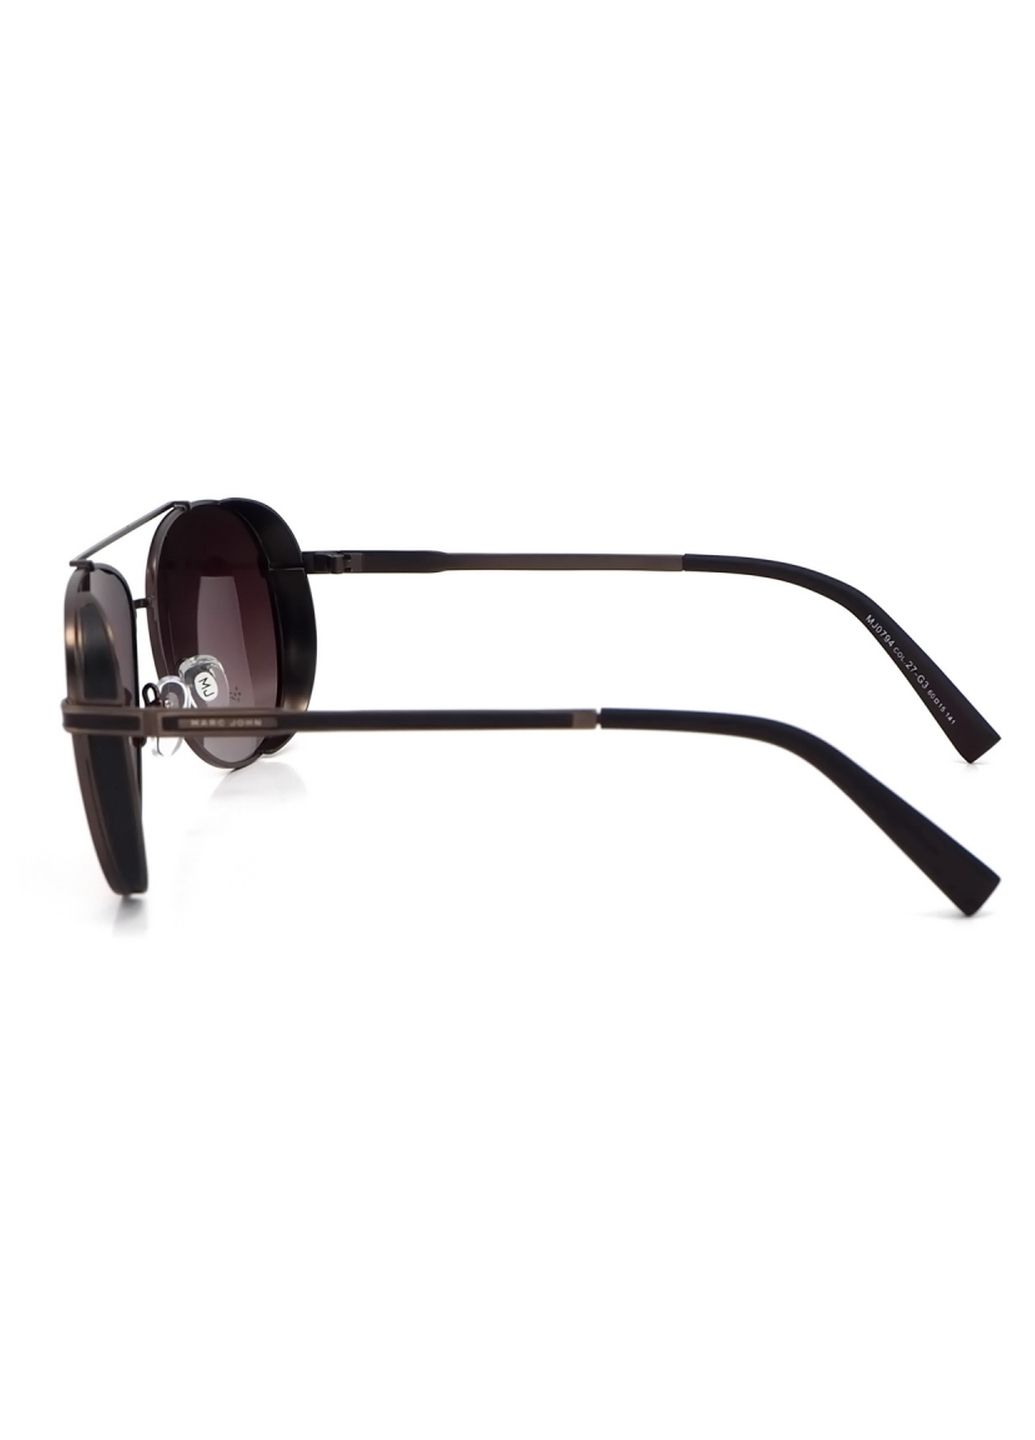 Купить Мужские солнцезащитные очки Marc John с поляризацией MJ0794 190013 - Коричневый в интернет-магазине